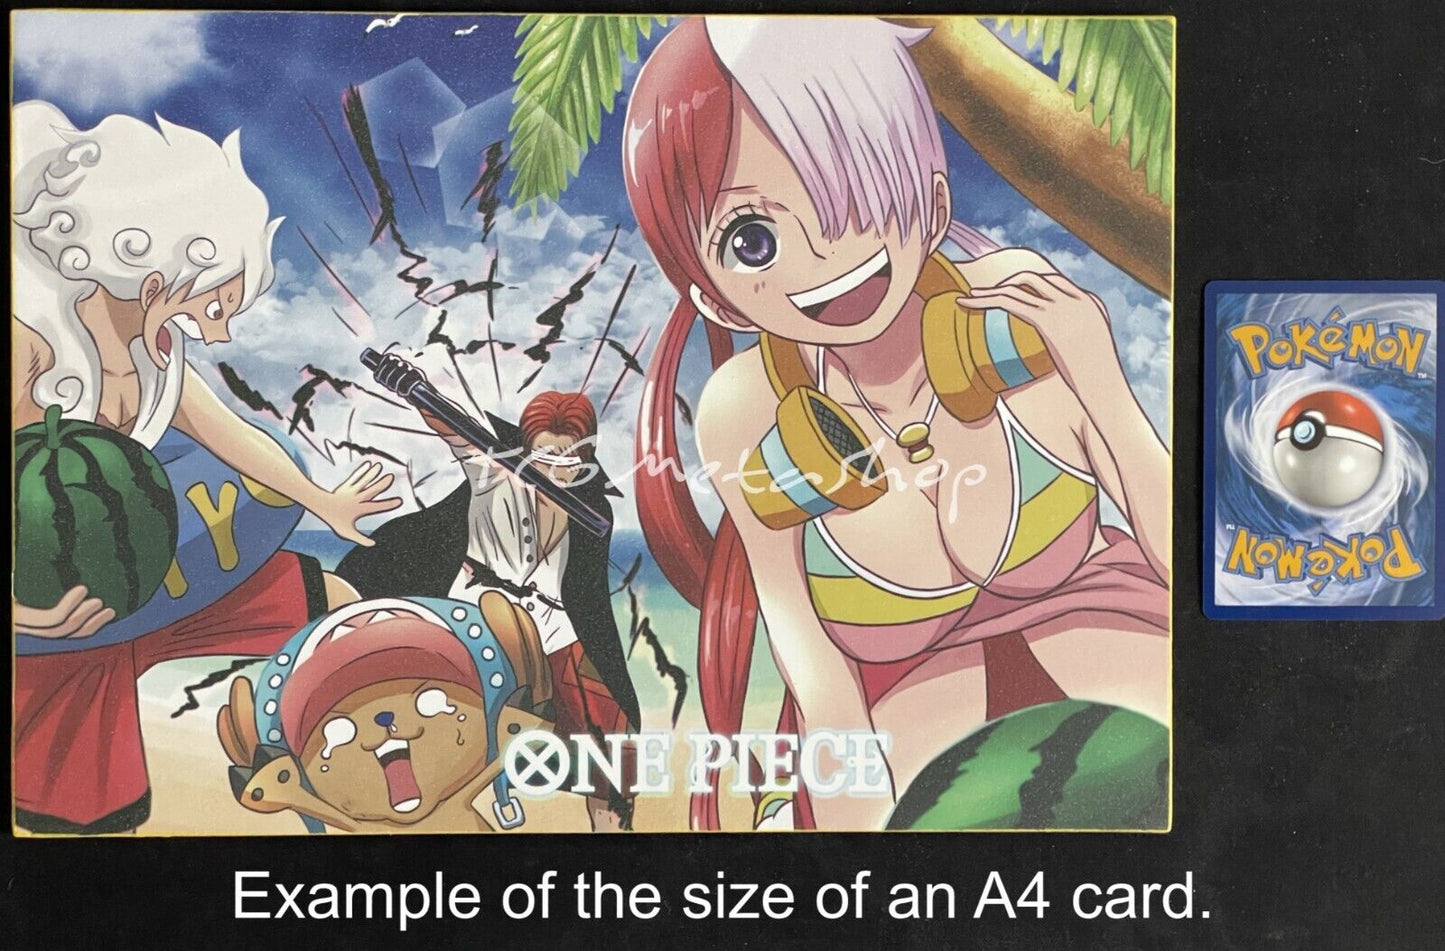 🔥 Portgas D. Ace One Piece Goddess Story Anime Waifu A4 Card SP 3 🔥